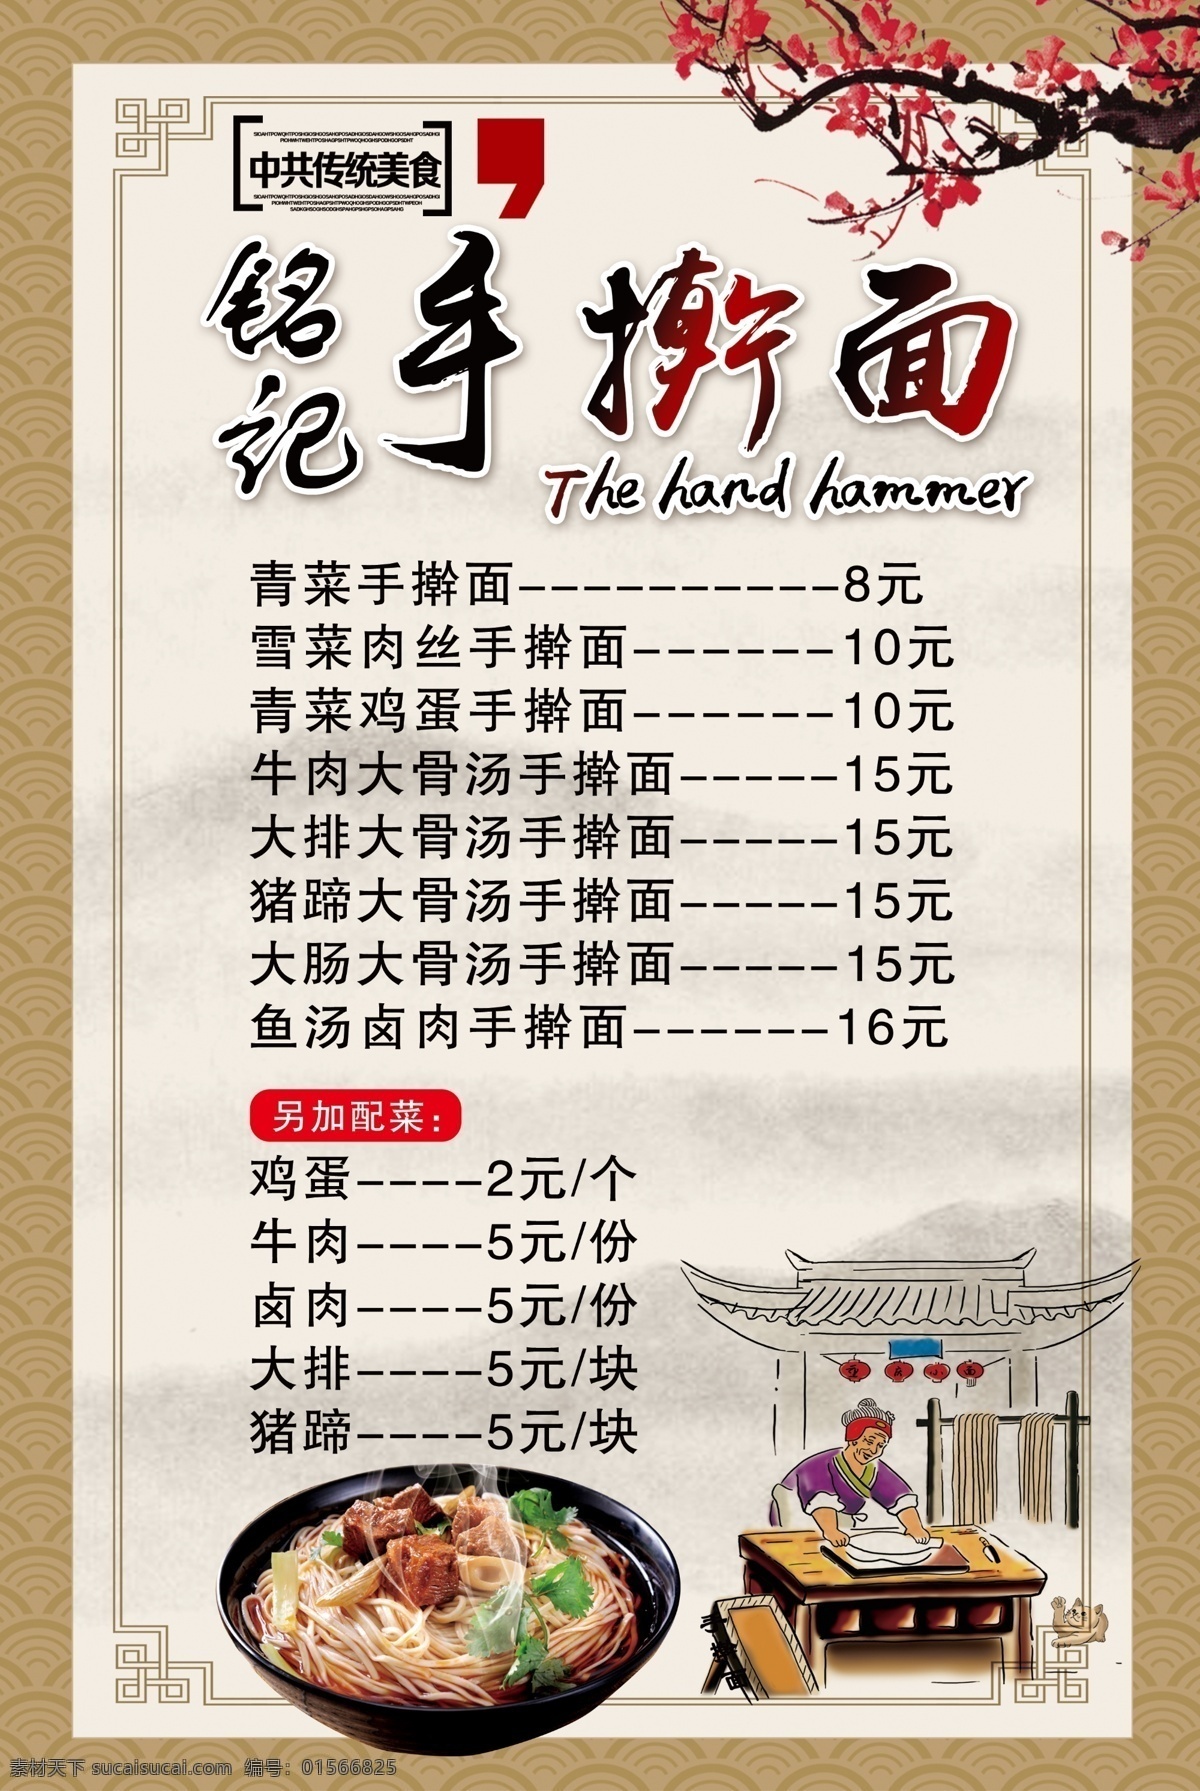 手擀面图片 手擀面 面食 中国传统美食 面类 菜单 海报